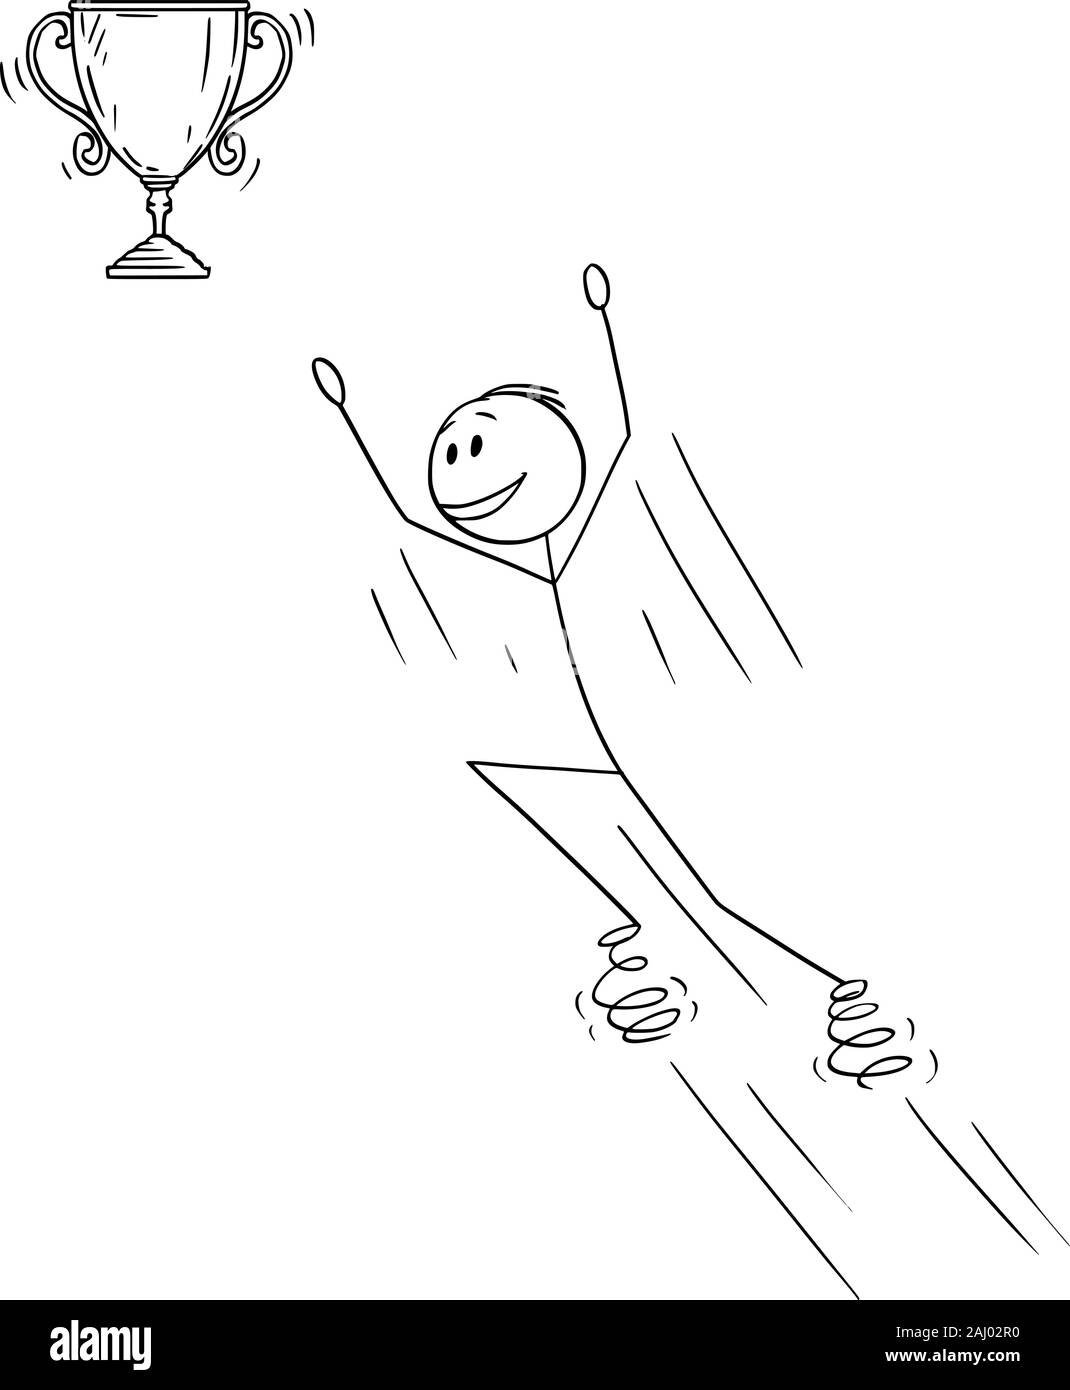 Vektor cartoon Strichmännchen Zeichnen konzeptionelle Darstellung der Mann oder Geschäftsmann springen auf Federn für Sieg Trophy Sieger Cup. Stock Vektor